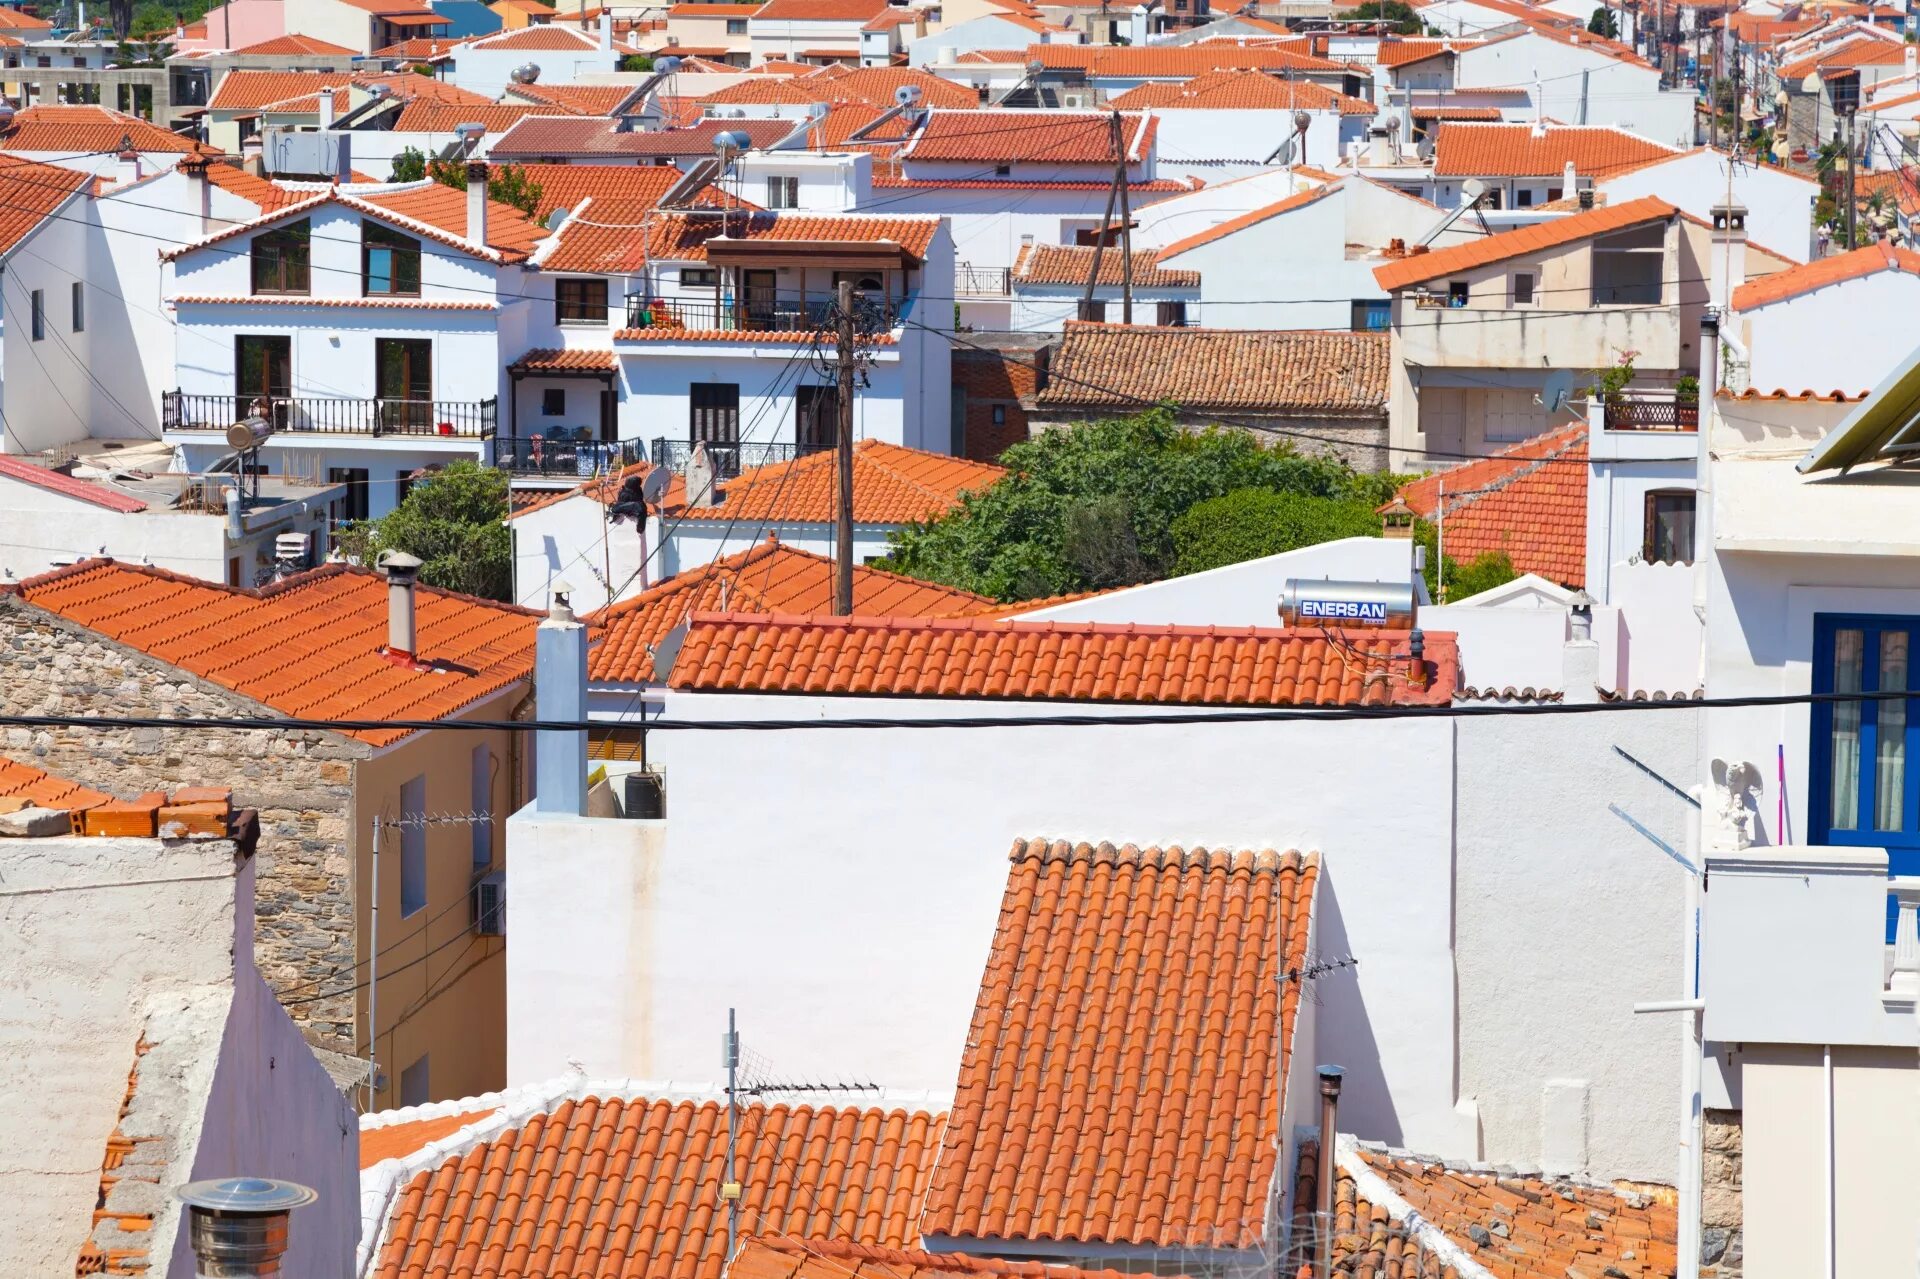 Гаражи греции. Греция терракота крыши. Крыши домов в Греции. Греция дома с красными крышами. Греция крыши домиков.